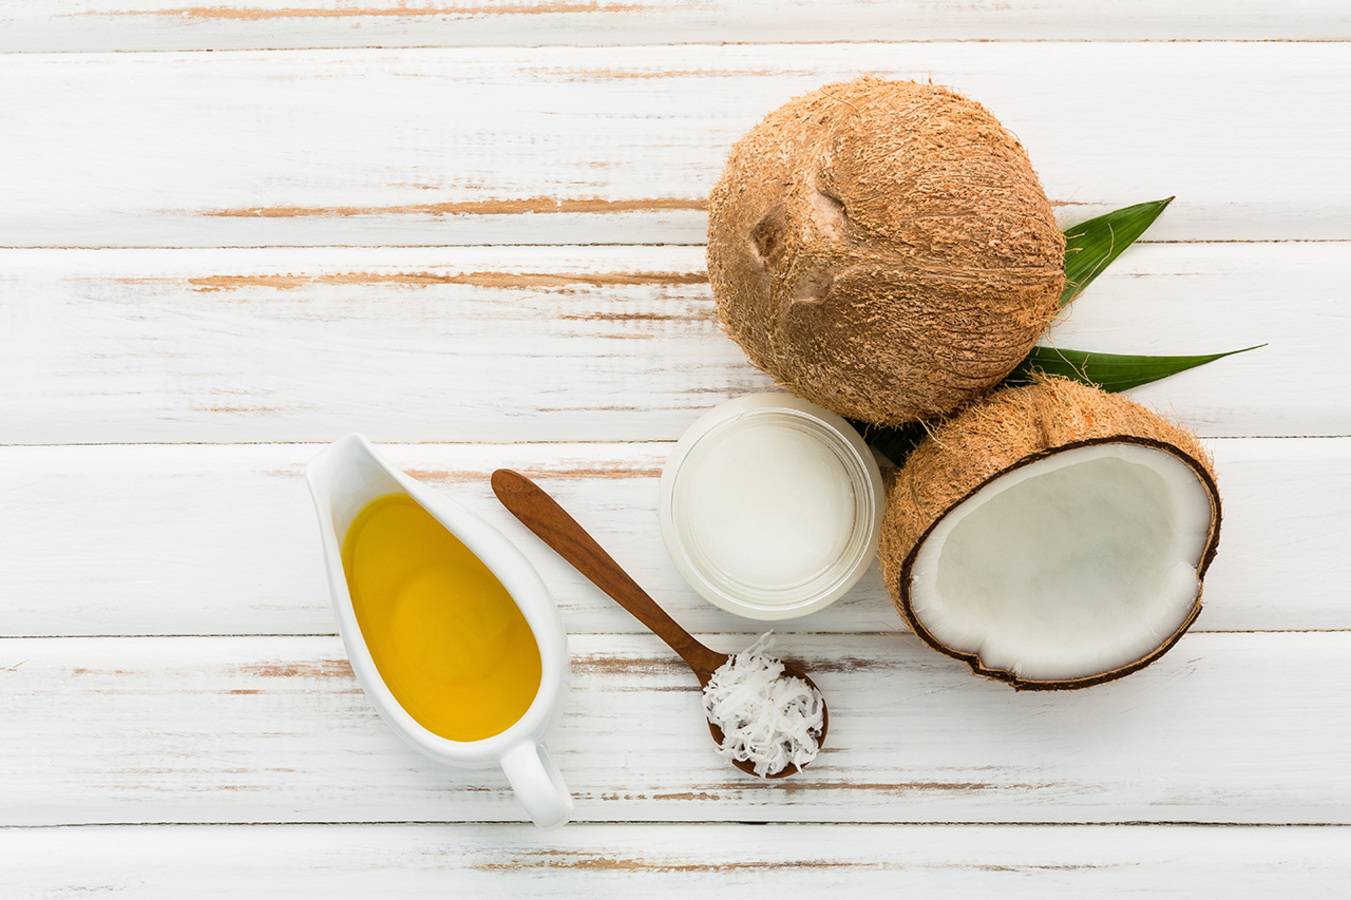 Для волос, лица и тела:15 способов, как можно использовать кокосовое масло